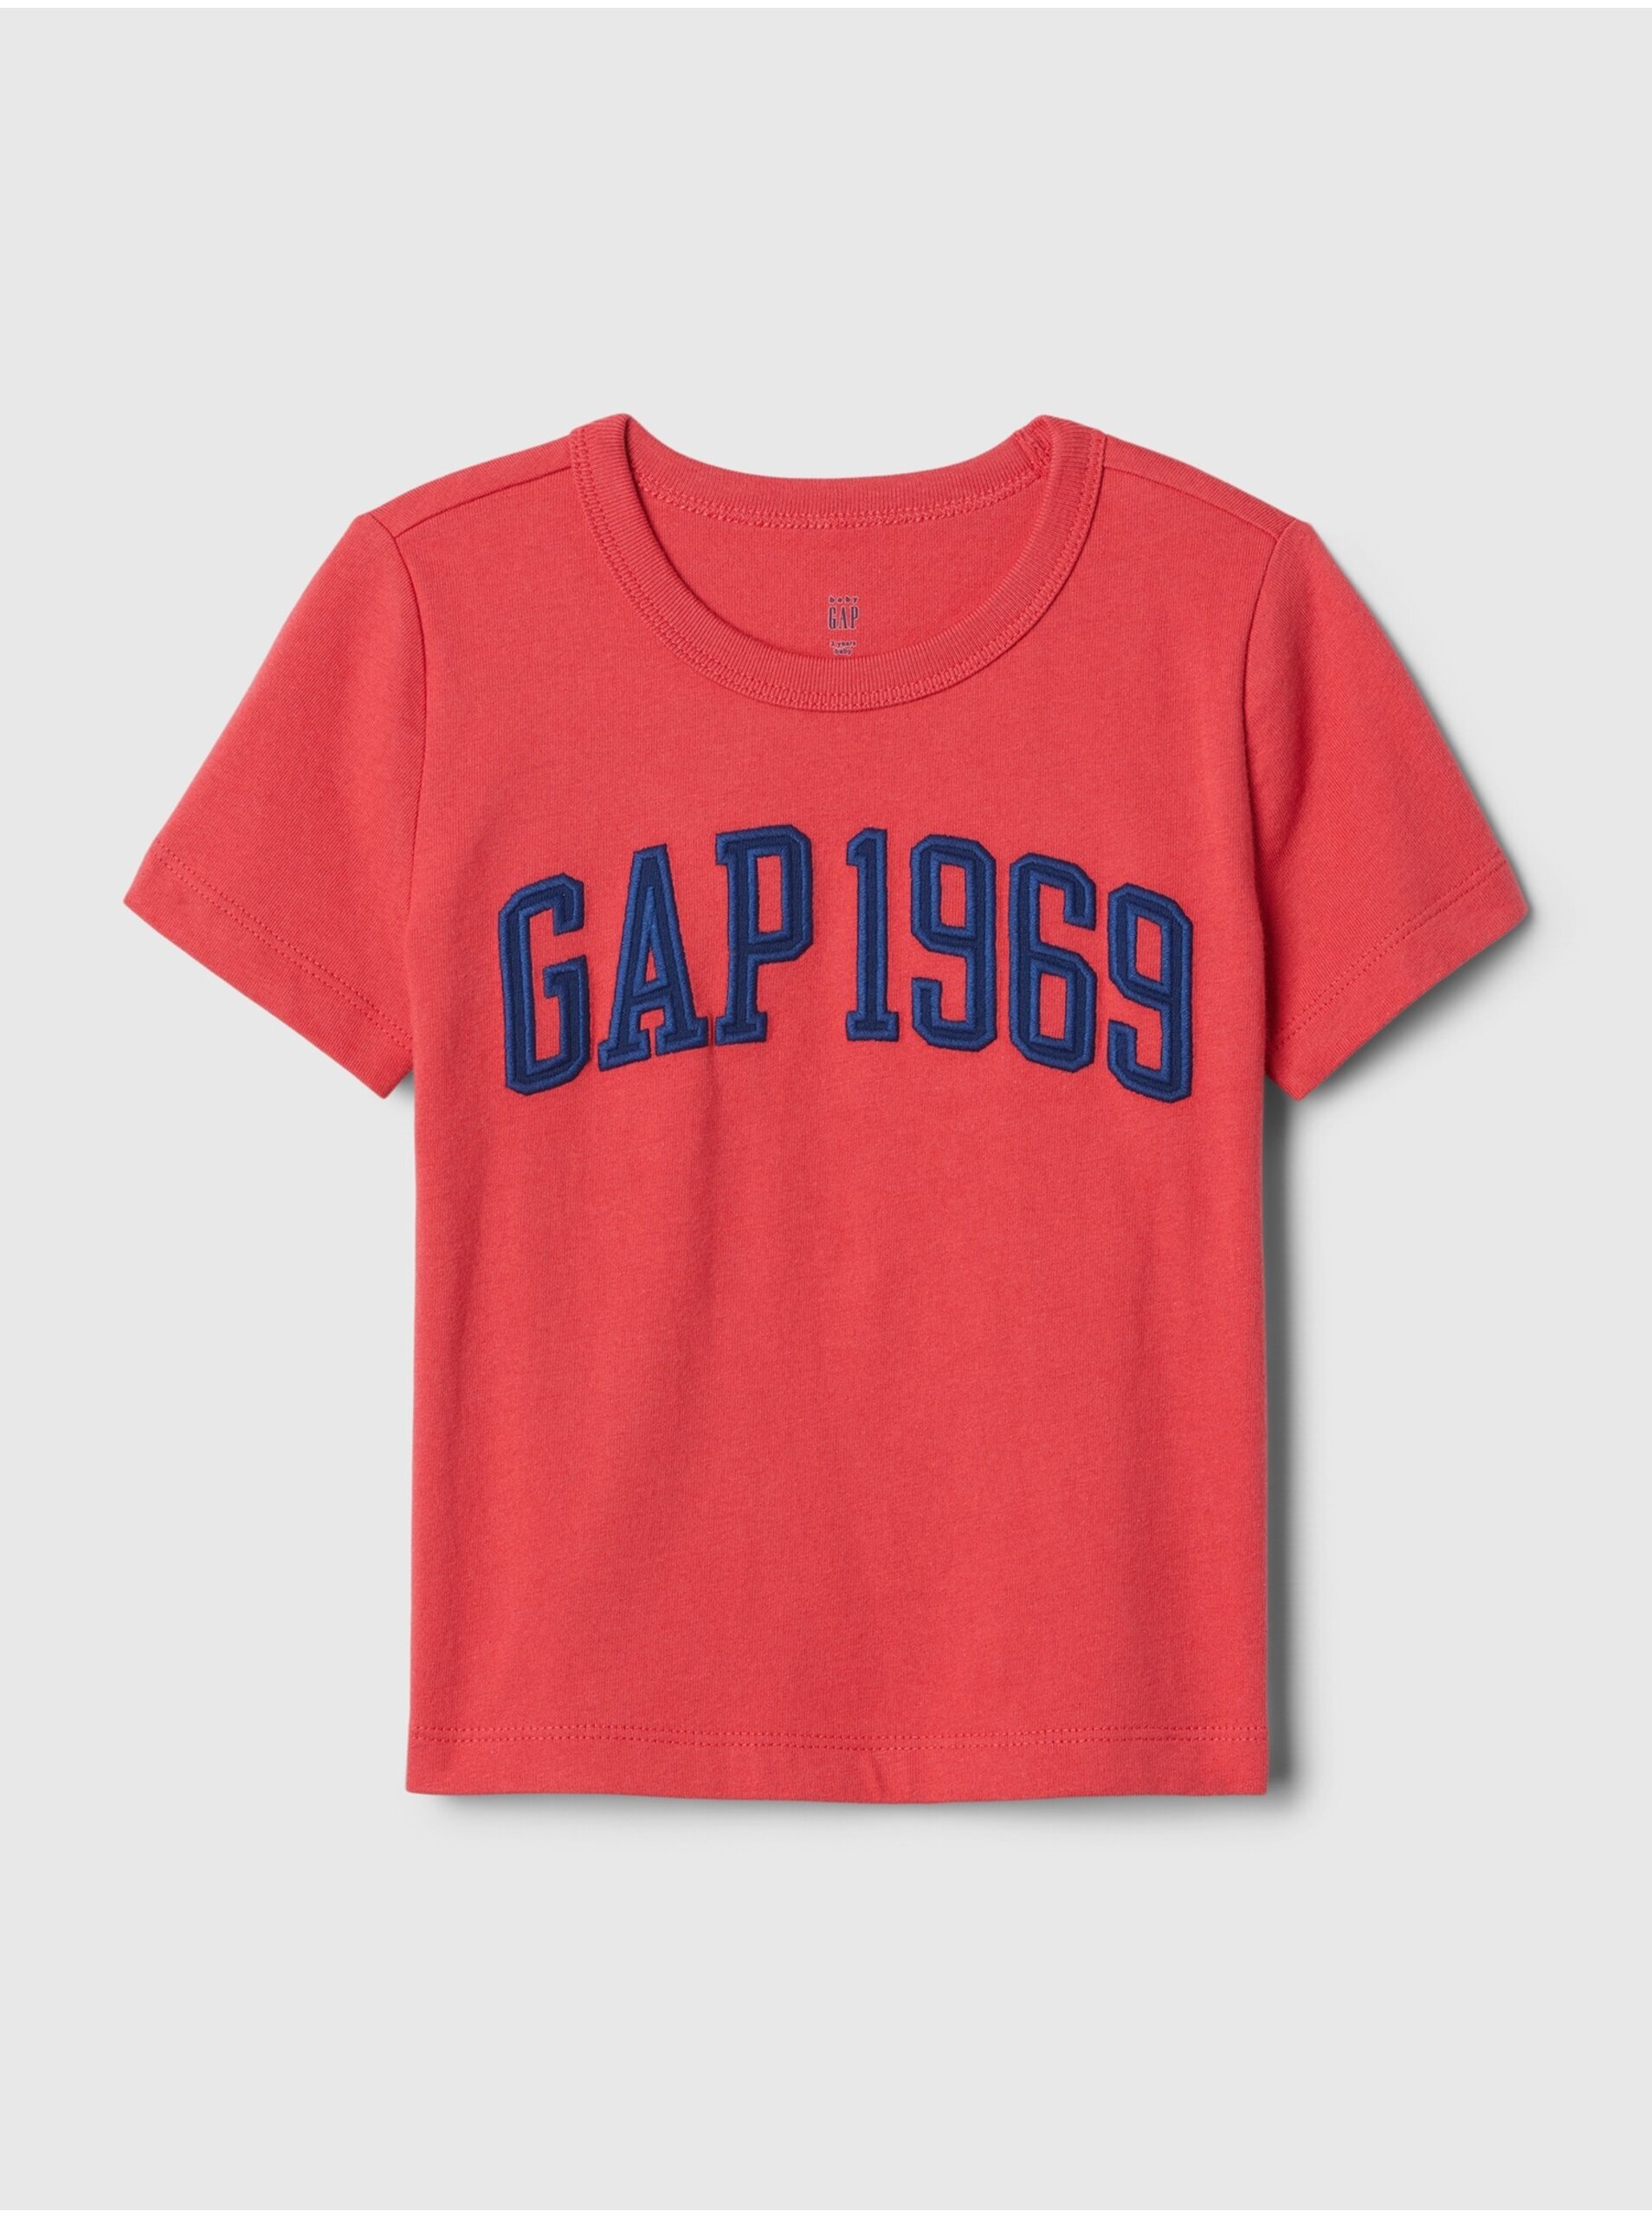 Levně Červené klučičí tričko GAP 1969